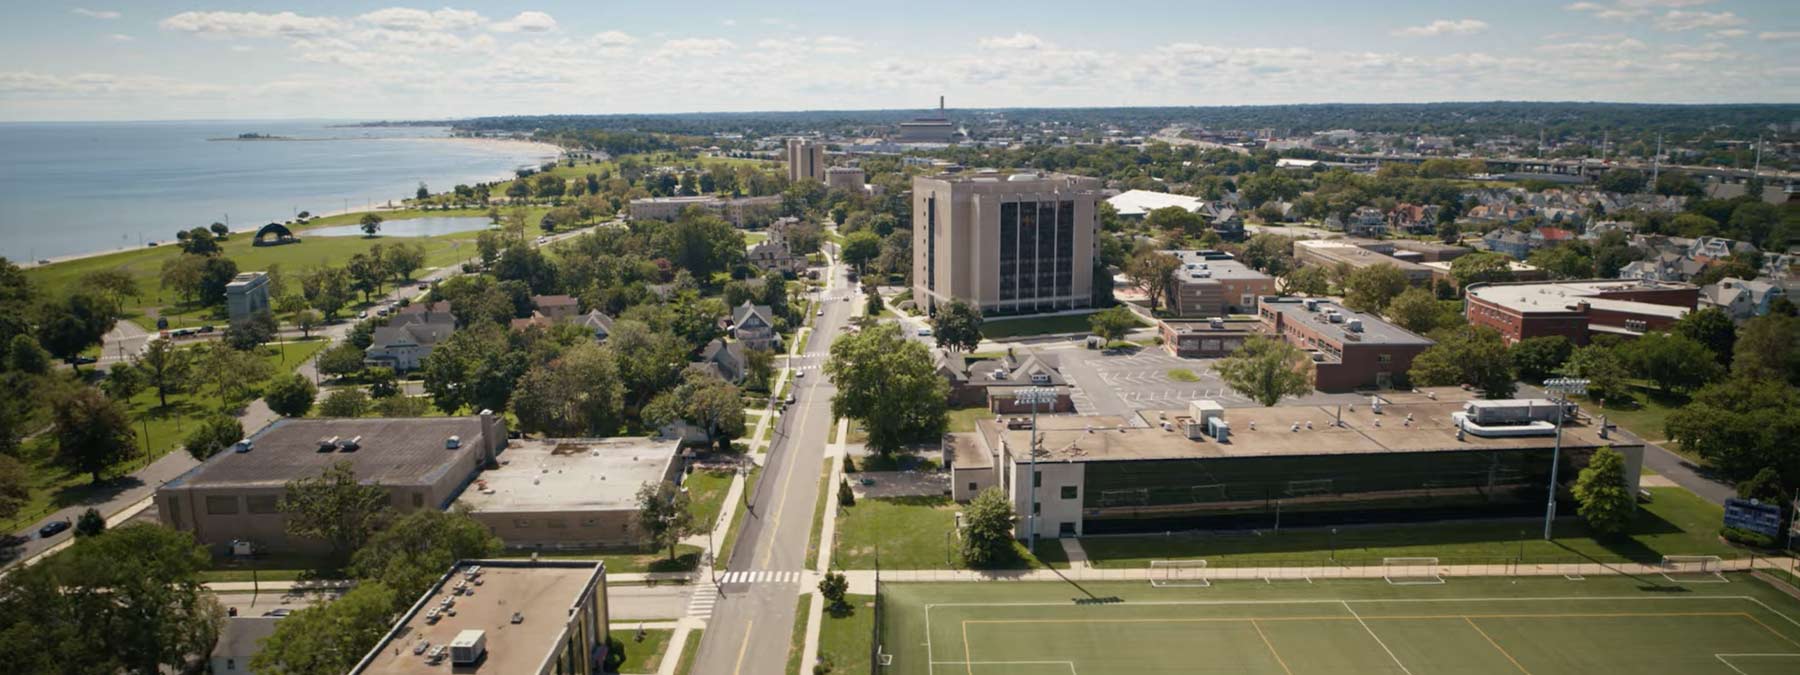 aerial shot of the UB campus